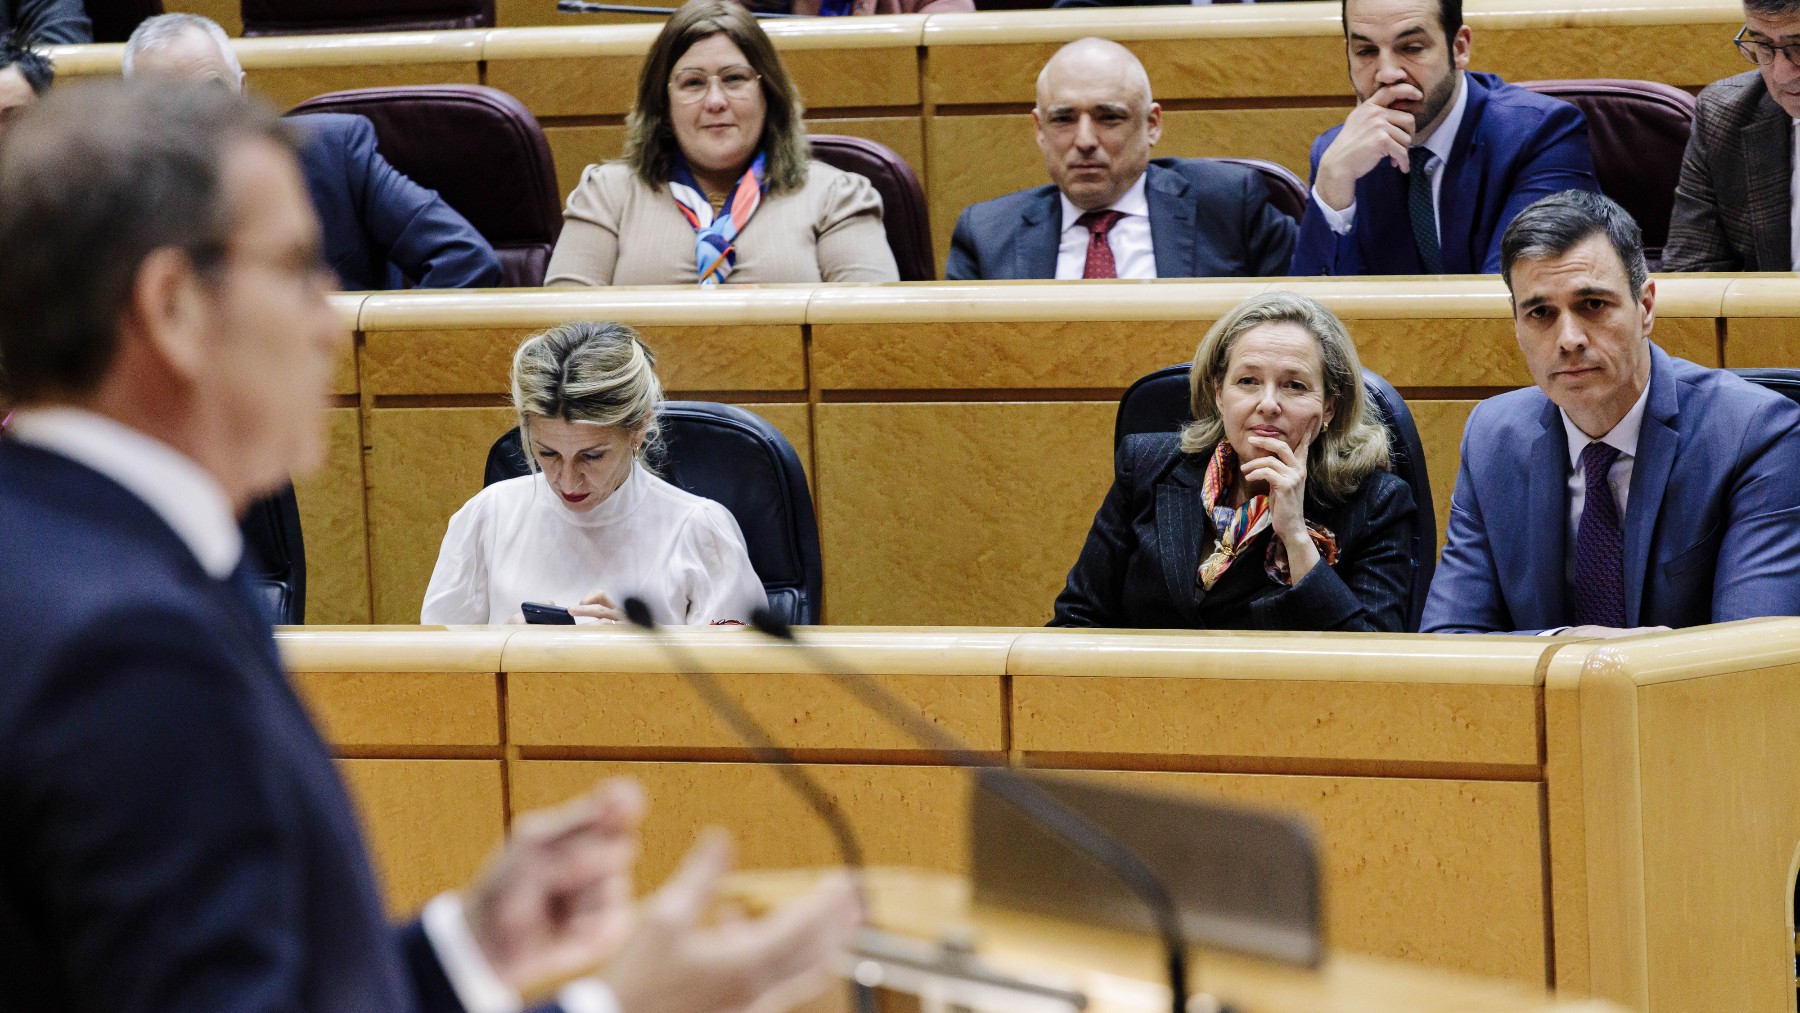 Feijóo replicando a Sánchez en el Senado. (Foto: EP)